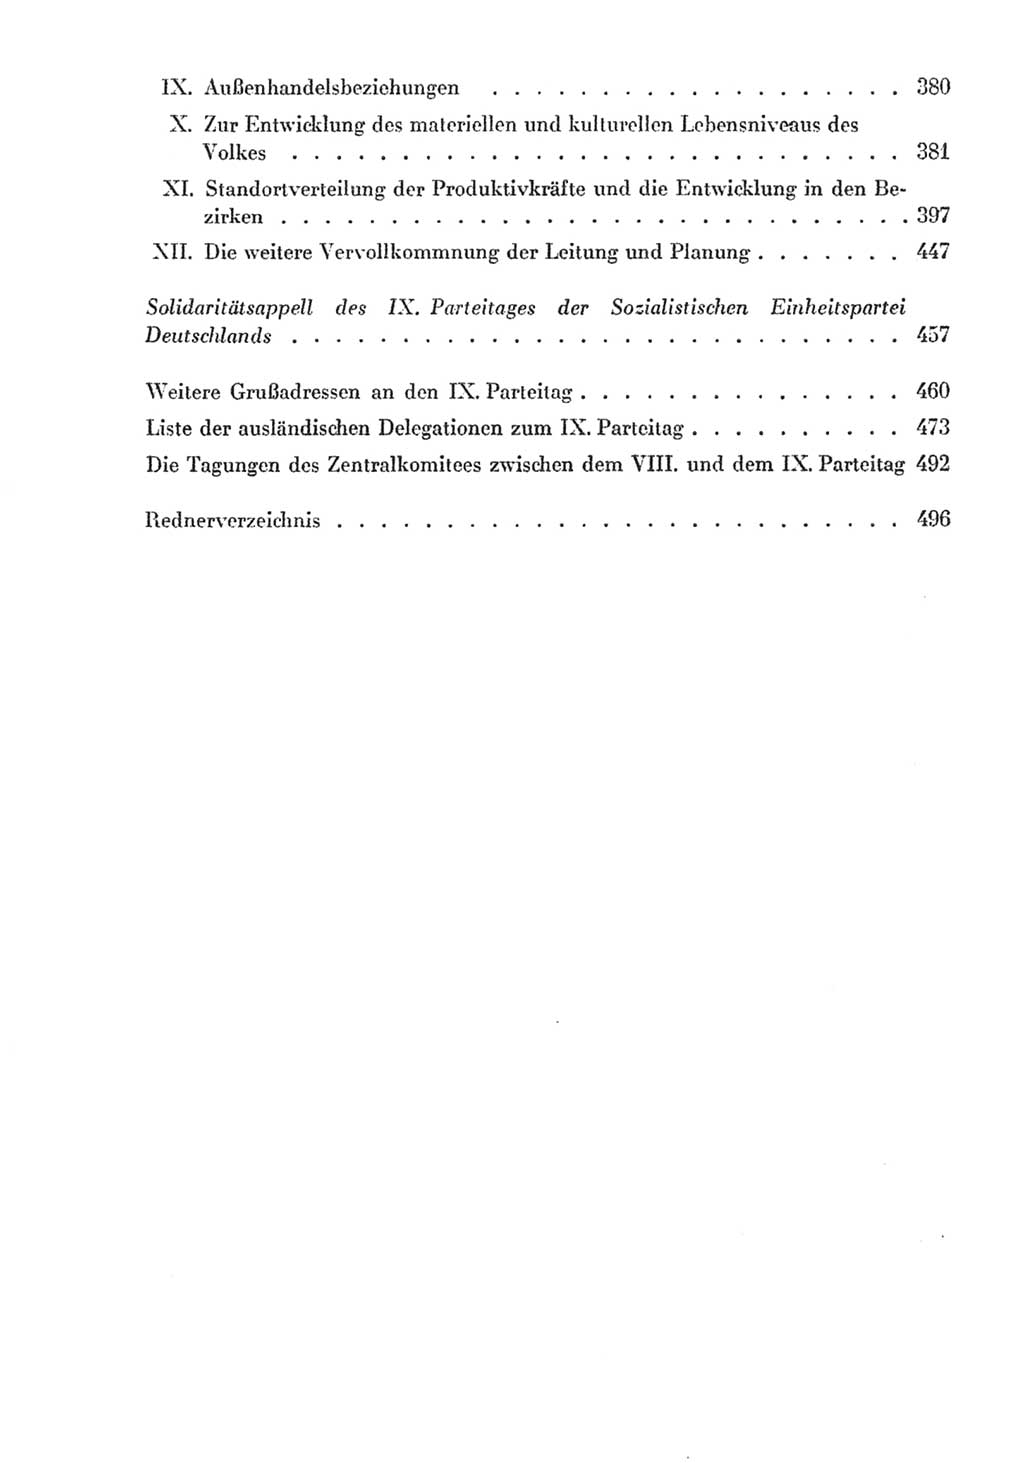 Protokoll der Verhandlungen des Ⅸ. Parteitages der Sozialistischen Einheitspartei Deutschlands (SED) [Deutsche Demokratische Republik (DDR)] 1976, Band 2, Seite 506 (Prot. Verh. Ⅸ. PT SED DDR 1976, Bd. 2, S. 506)